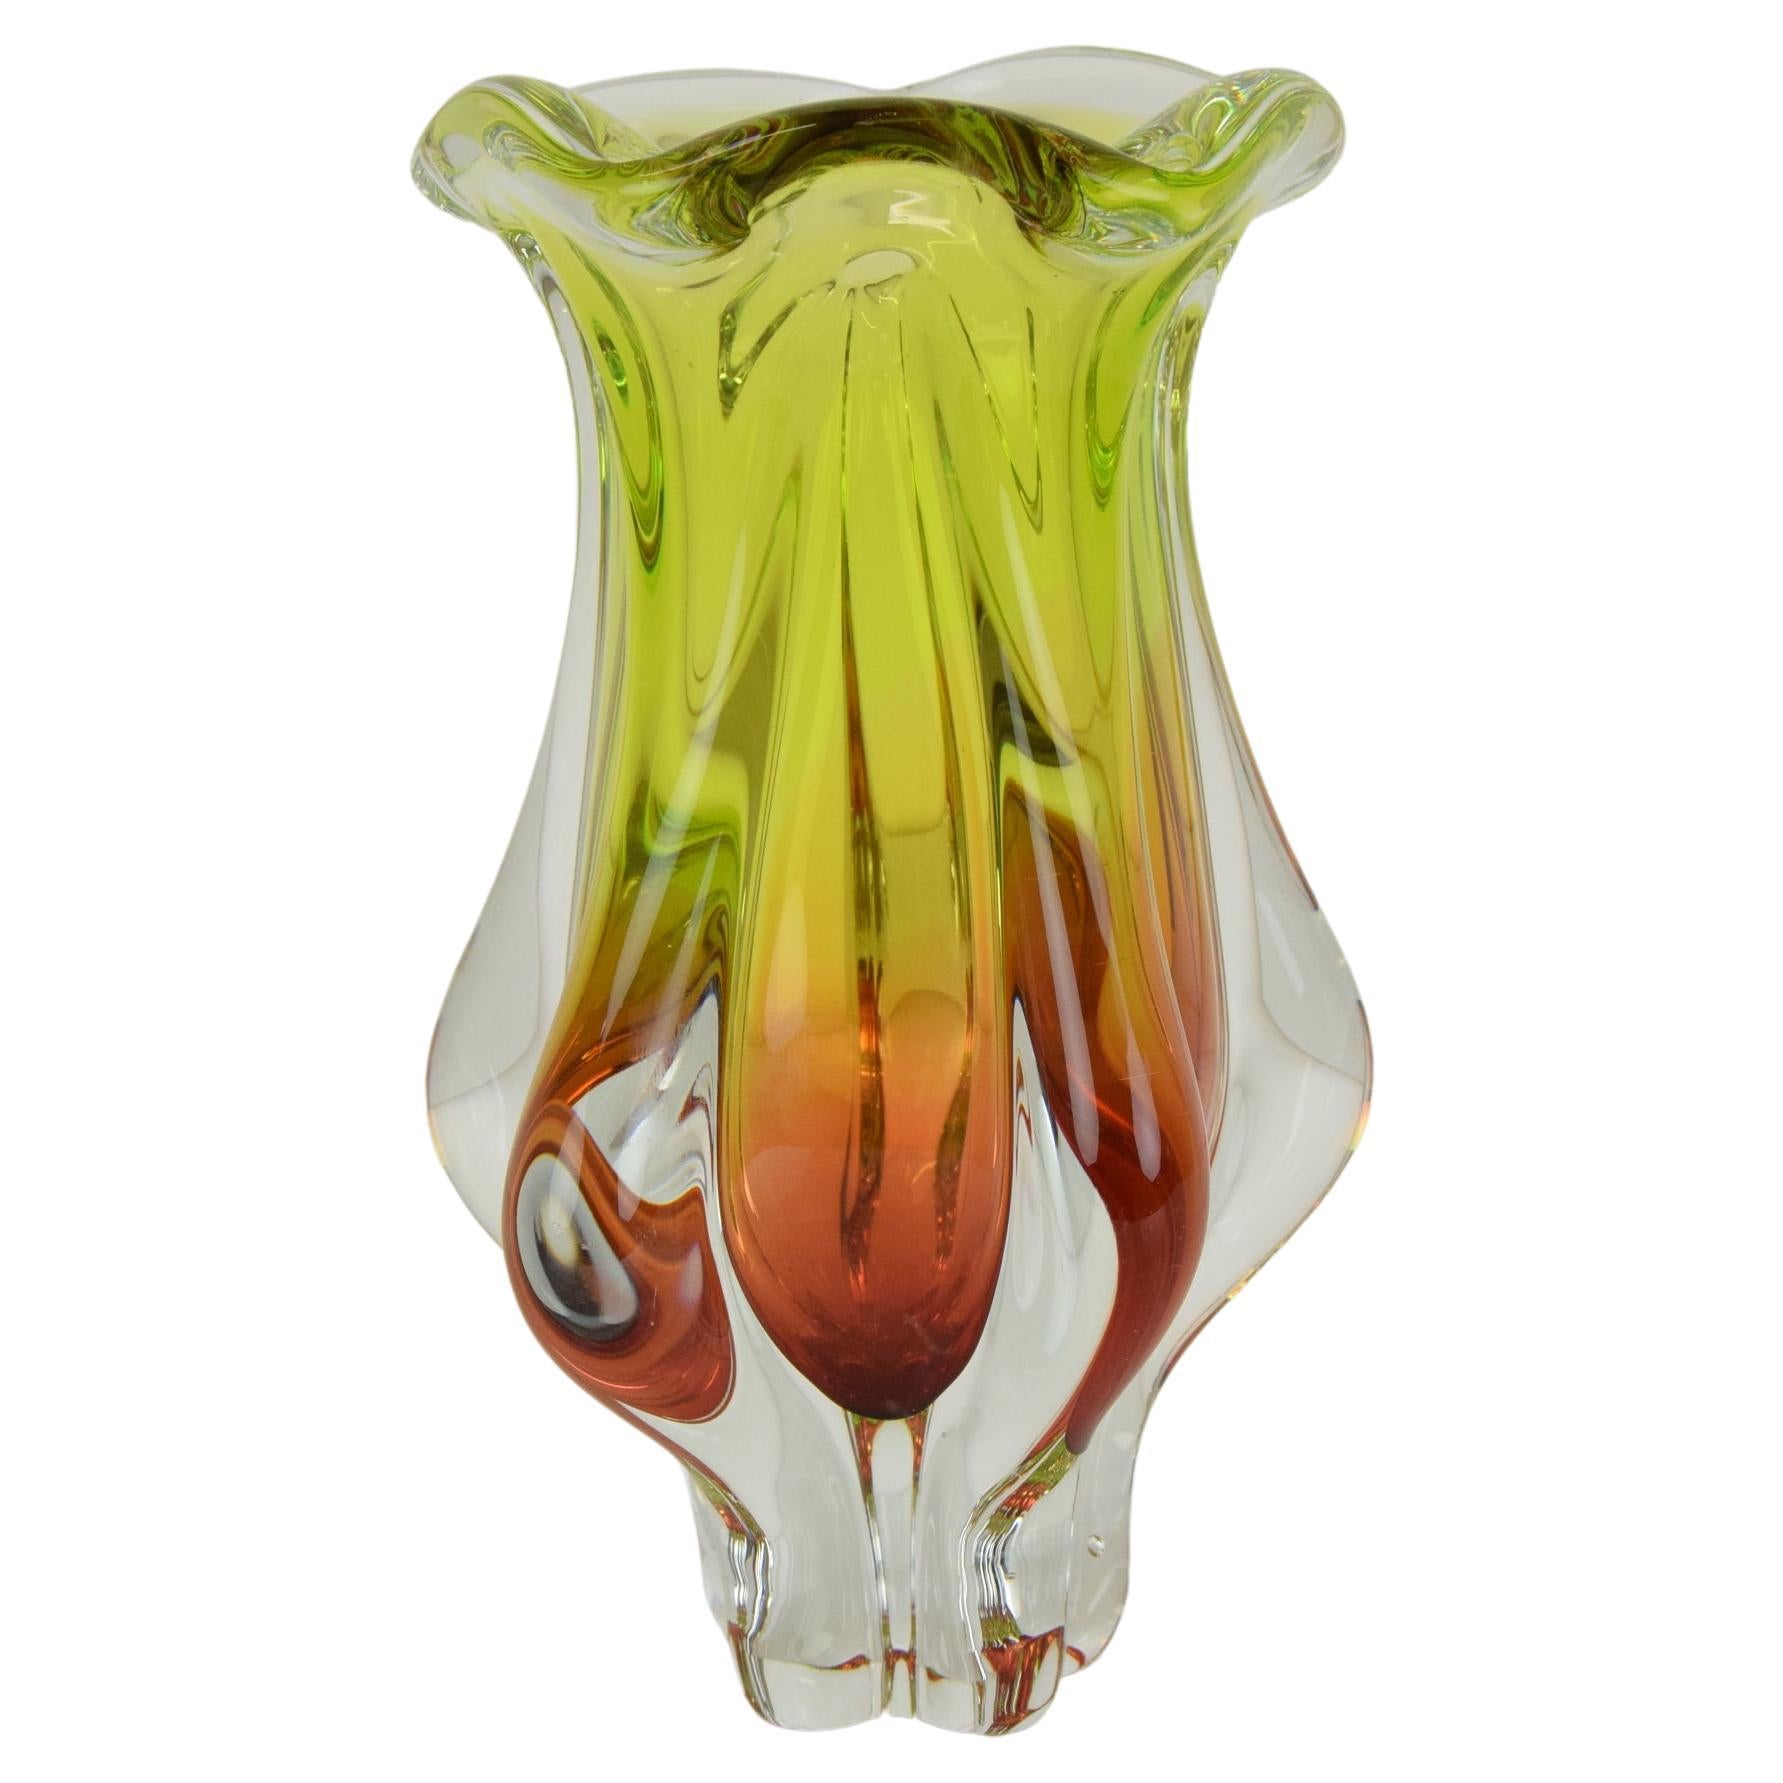 Art Glass Vase Designed by Josef Hospodka for Chribska Glassworks, 1960's